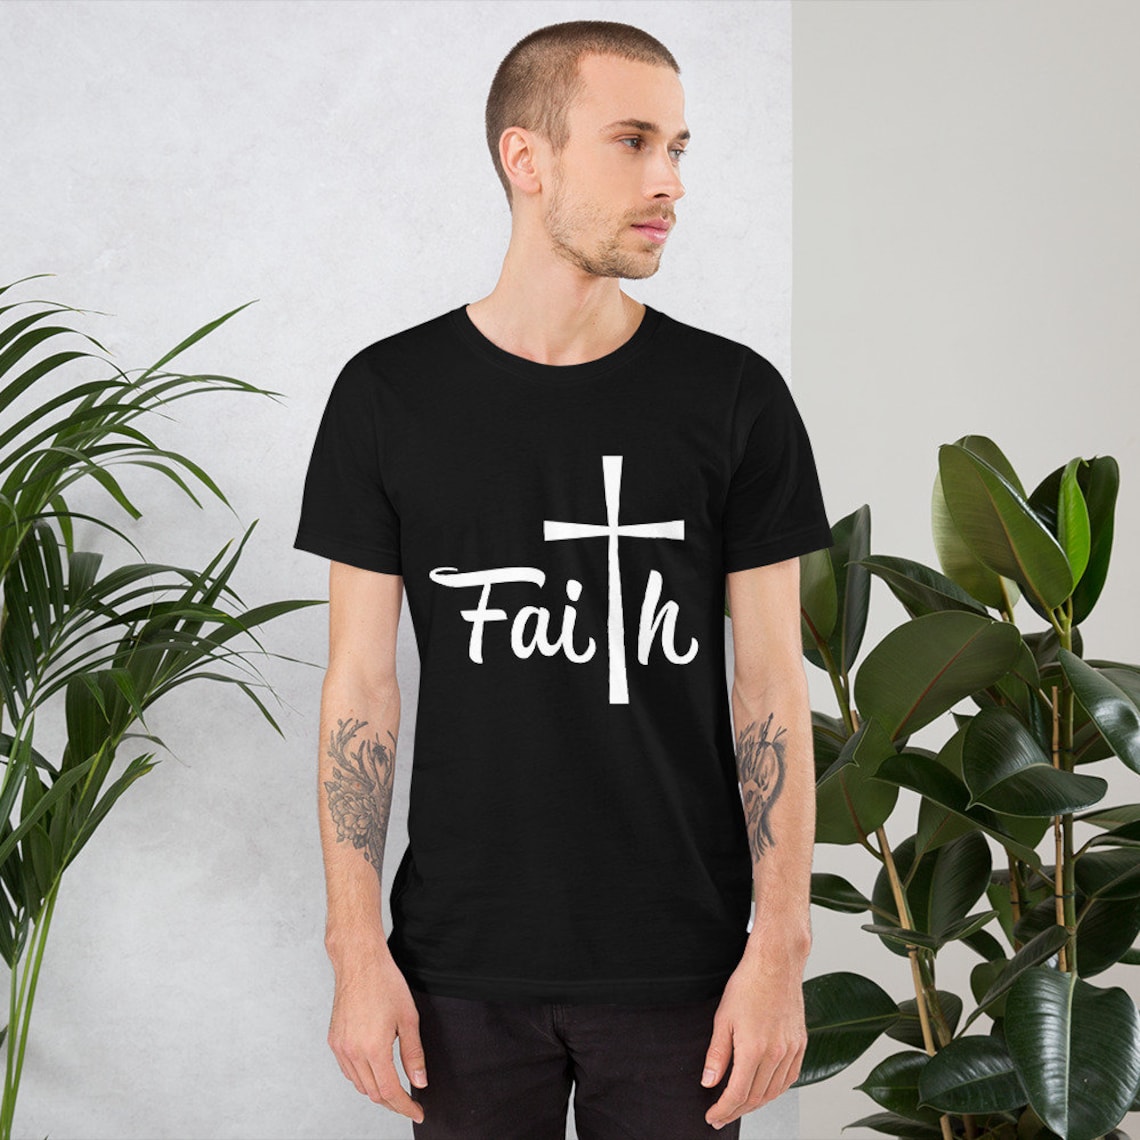 Faith T-shirt. | Etsy